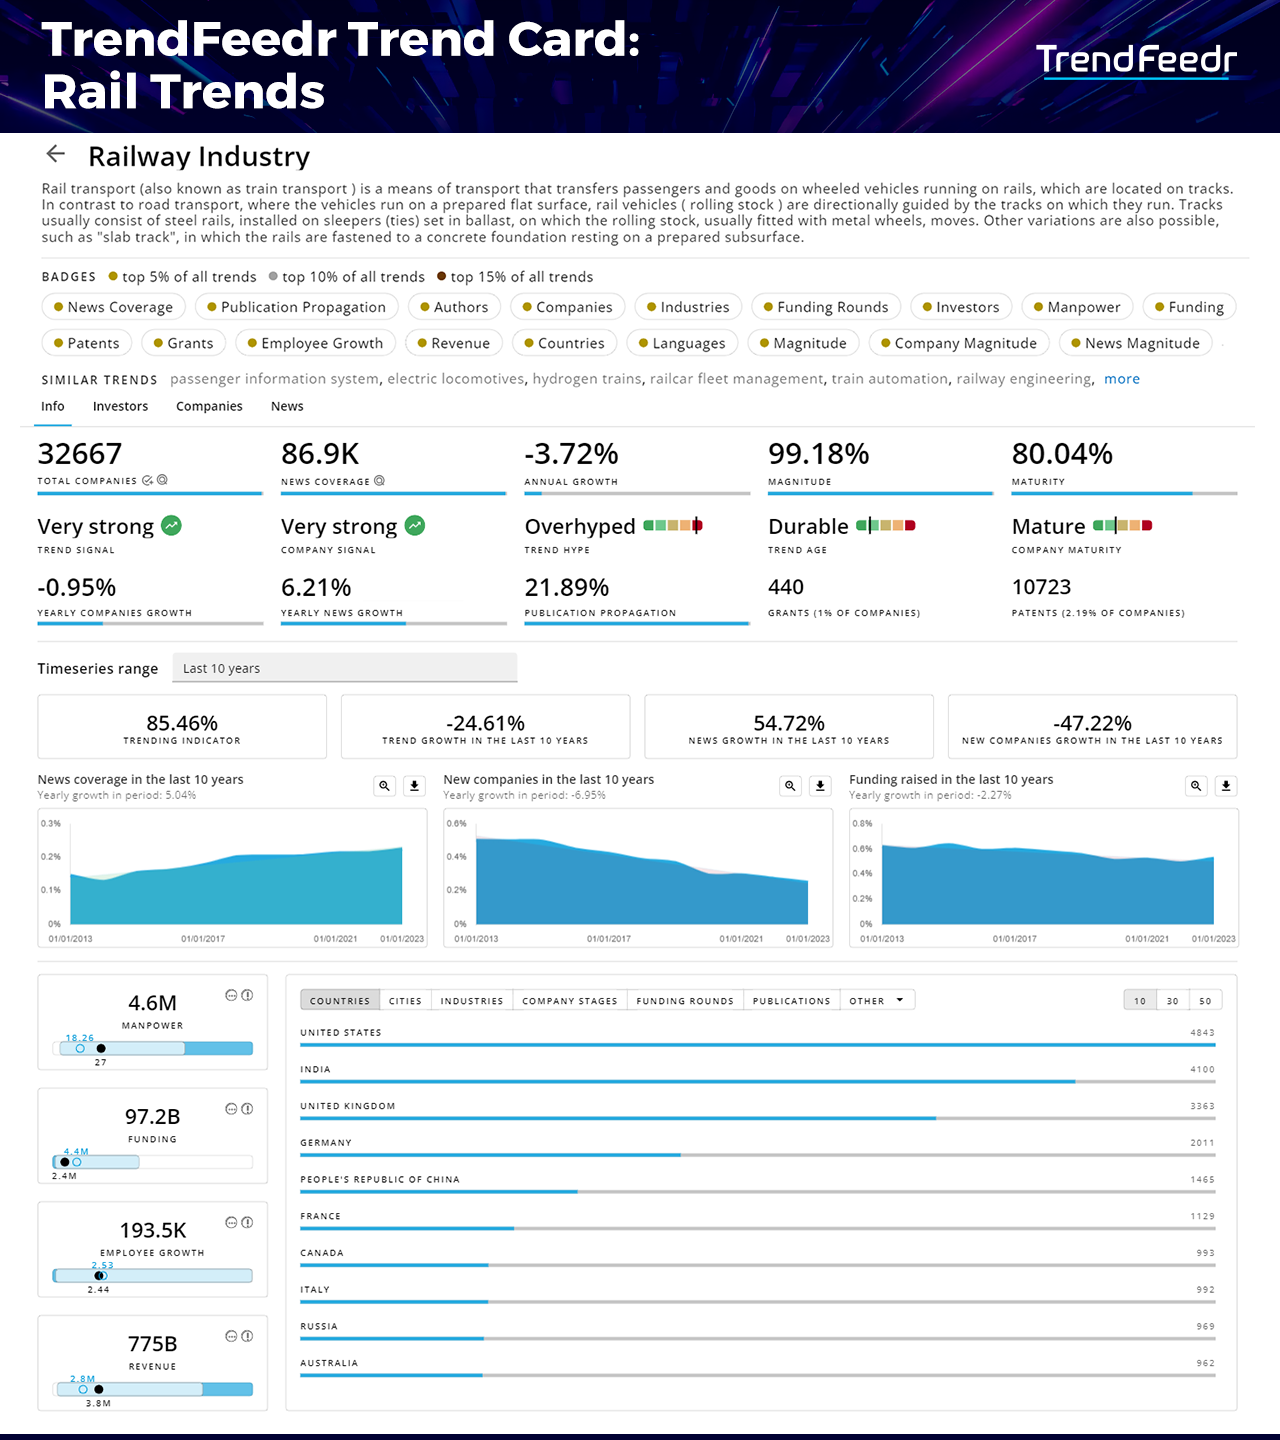 Rail-Trends-Report-TrendCard-TrendFeedr-noresize